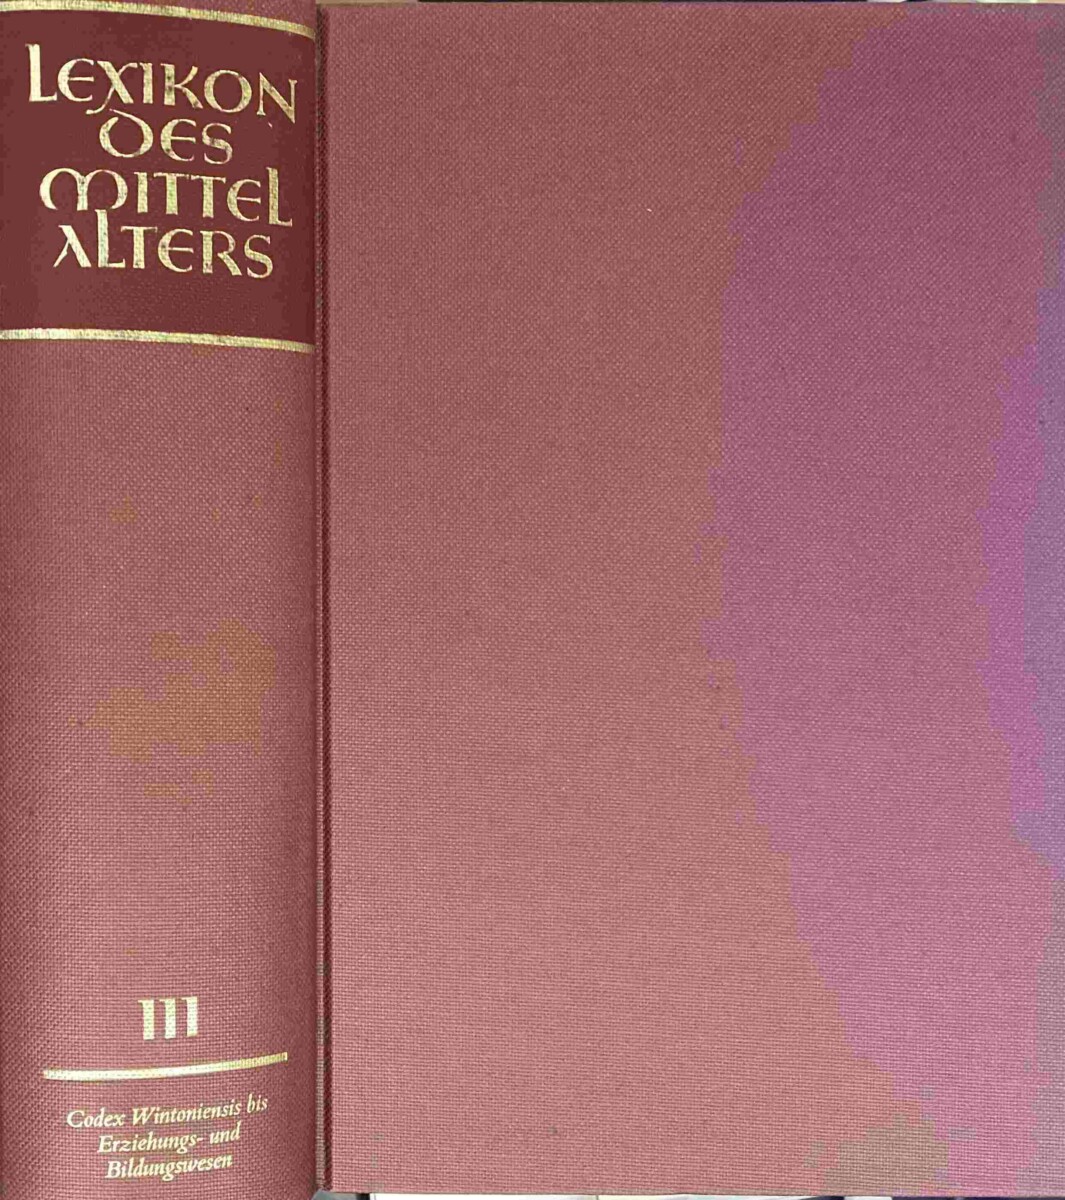 Lexikon des Mittelalters III: Codex Wintoniensis bis Erziehungs- und Bildungswesen - Bautier, Robert-Henri a.o. (ed.)